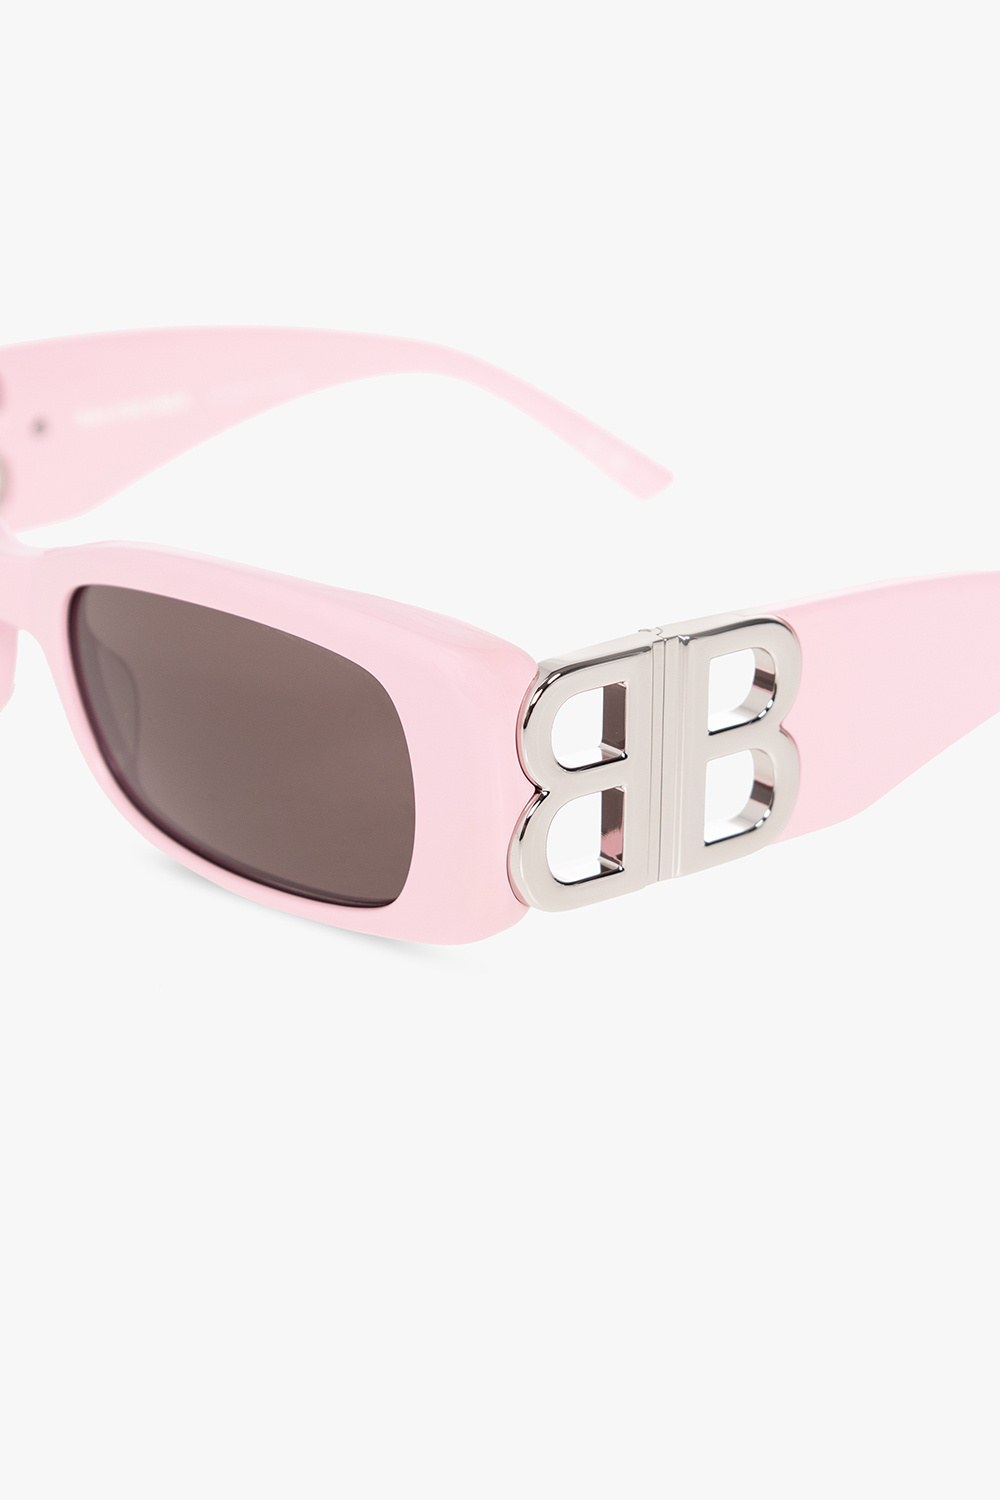 Balenciaga 'Dynasty Rectangle' sunglasses | These sunglasses 